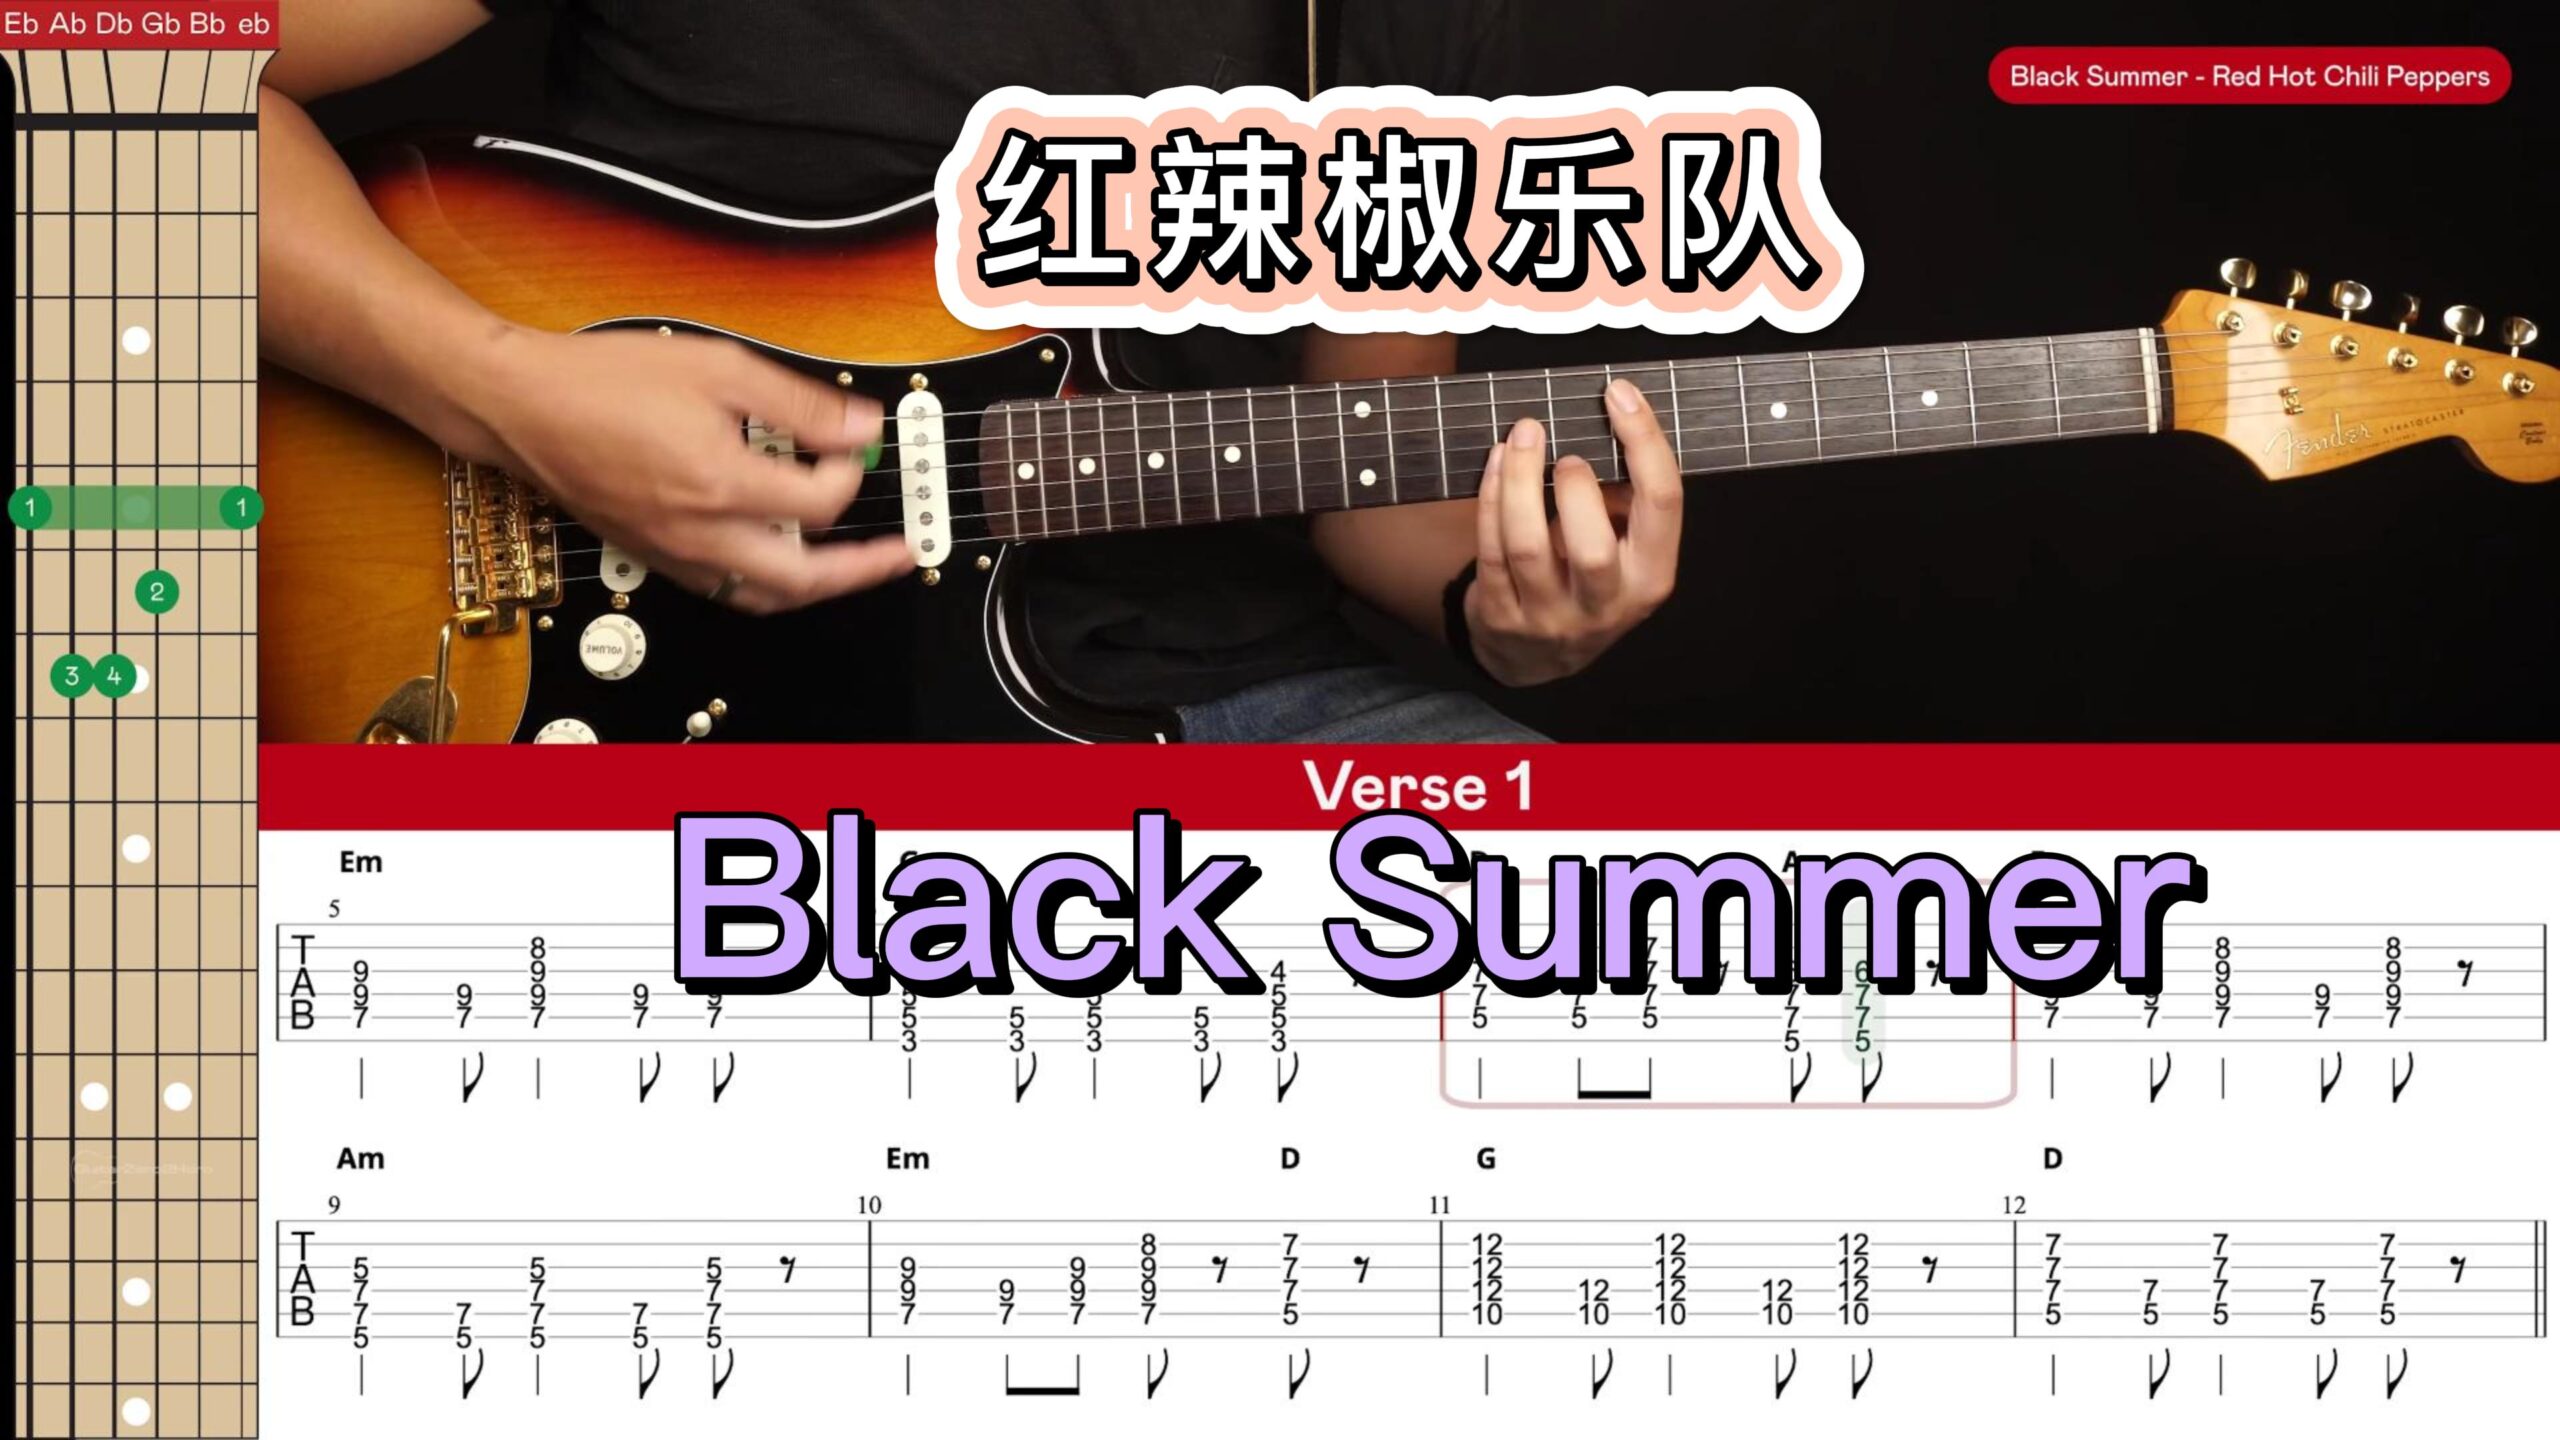 红辣椒乐队《Black Summer》教学视频谱-古桐博客